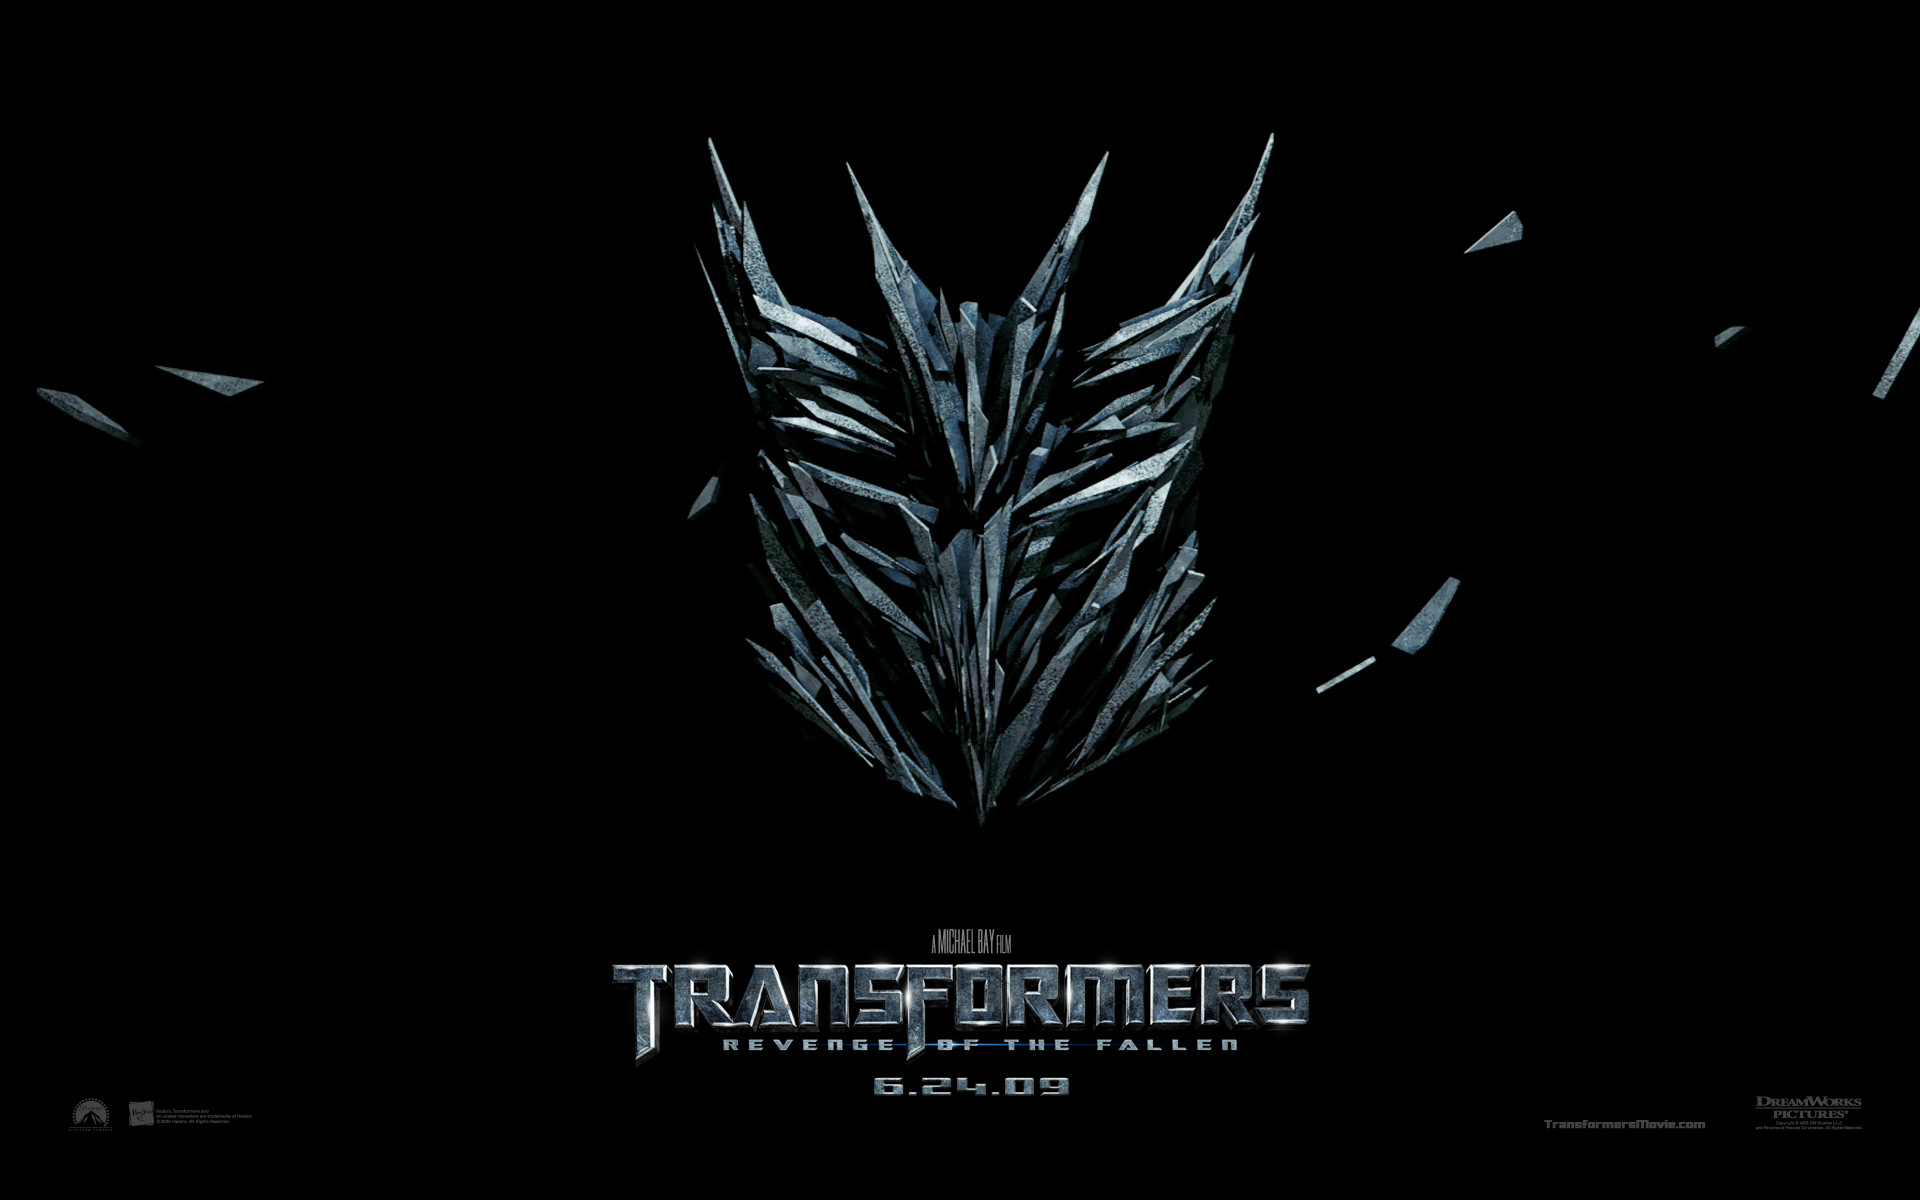 Скачать обои бесплатно Трансформеры (Transformers), Кино картинка на рабочий стол ПК